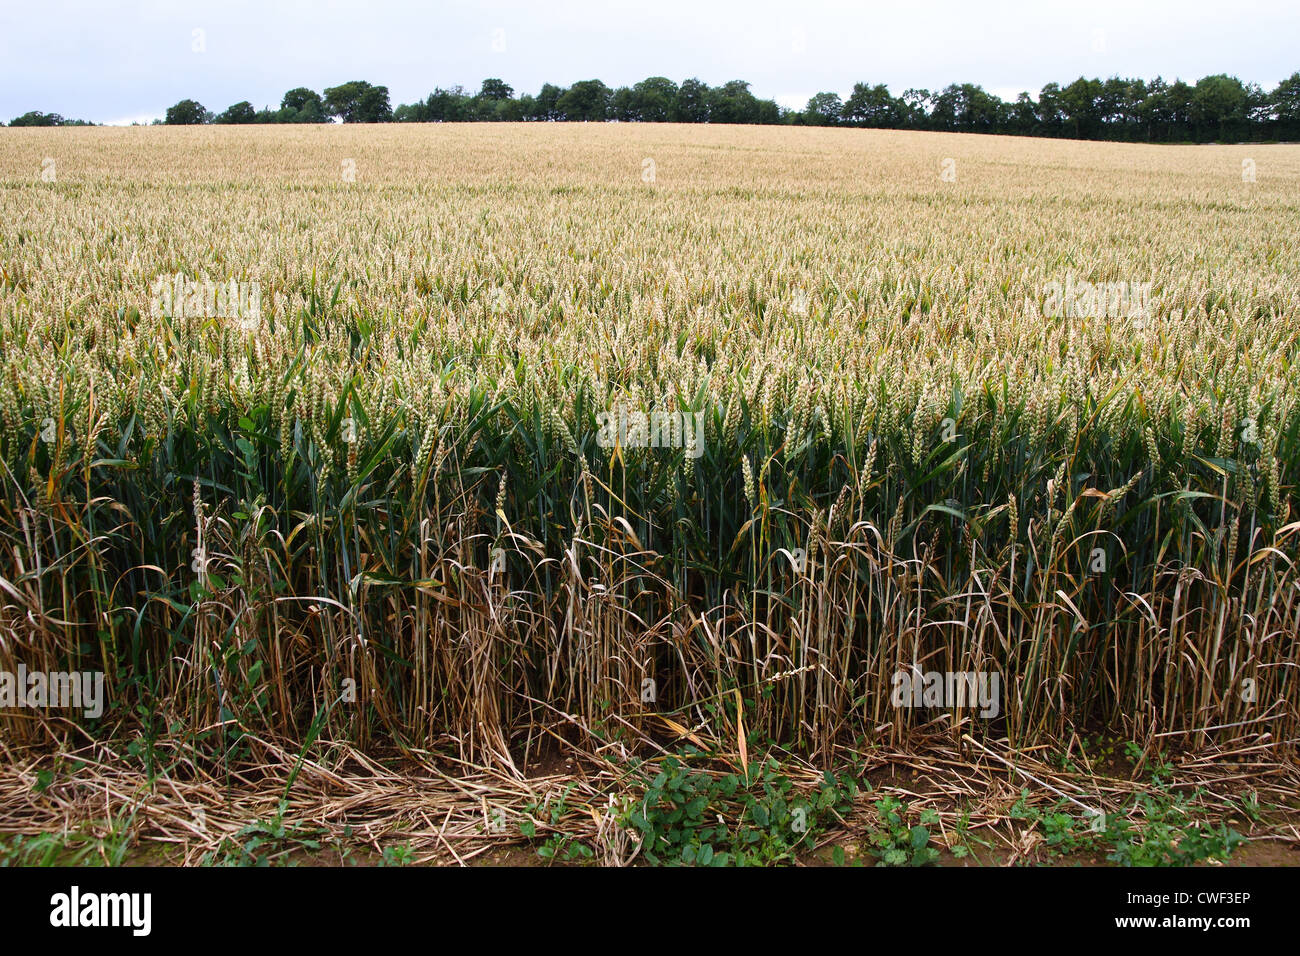 La récolte de blé de la fin de l'été principalement avec des tiges de blé vert graines maturation Banque D'Images